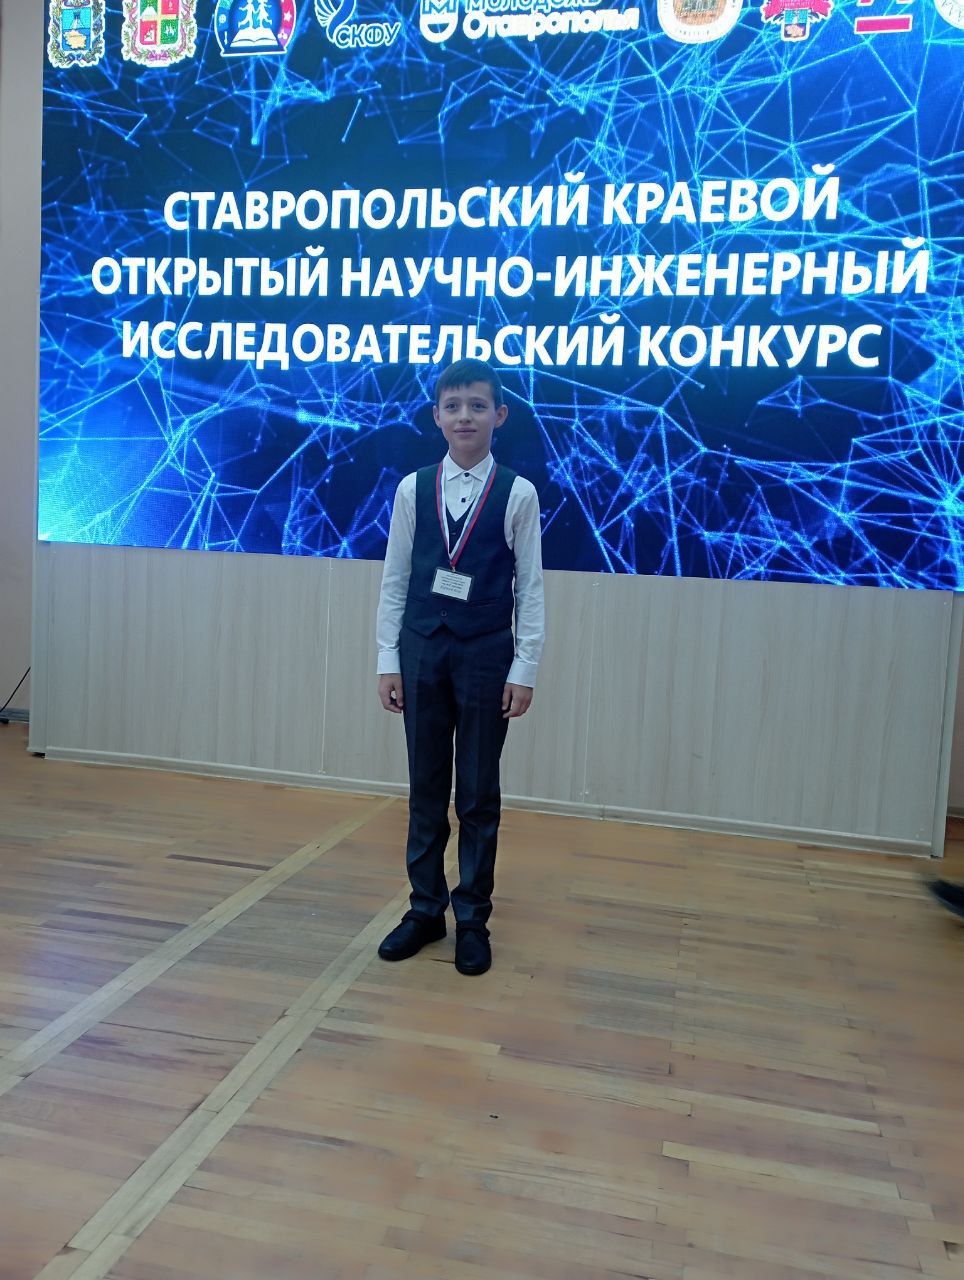 Курилов Егор (5 класс) – победитель I этапа Ставропольского краевого открытого научно-инженерного исследовательского конкурса